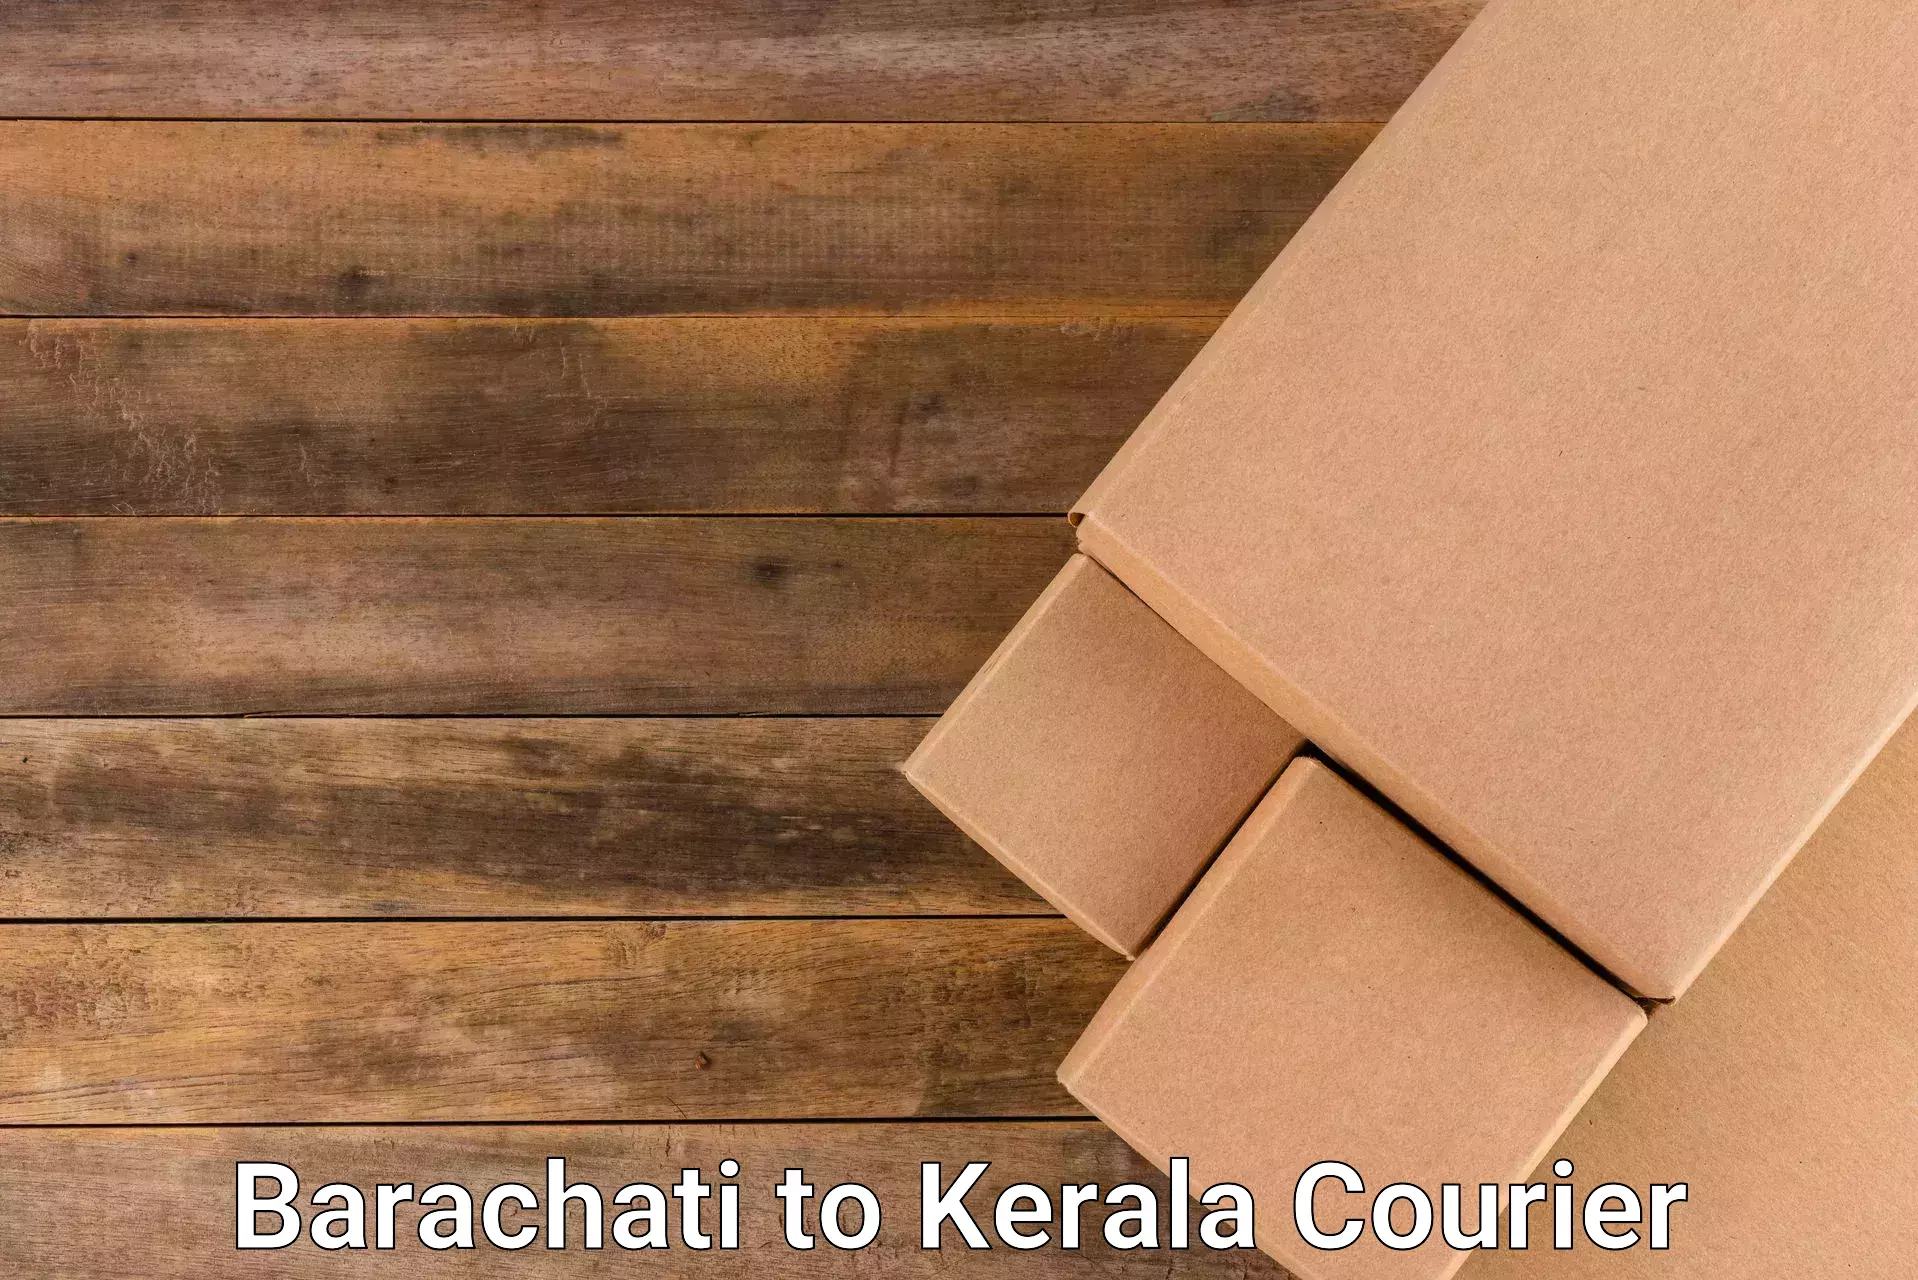 Cost-effective courier options Barachati to Thiruvananthapuram